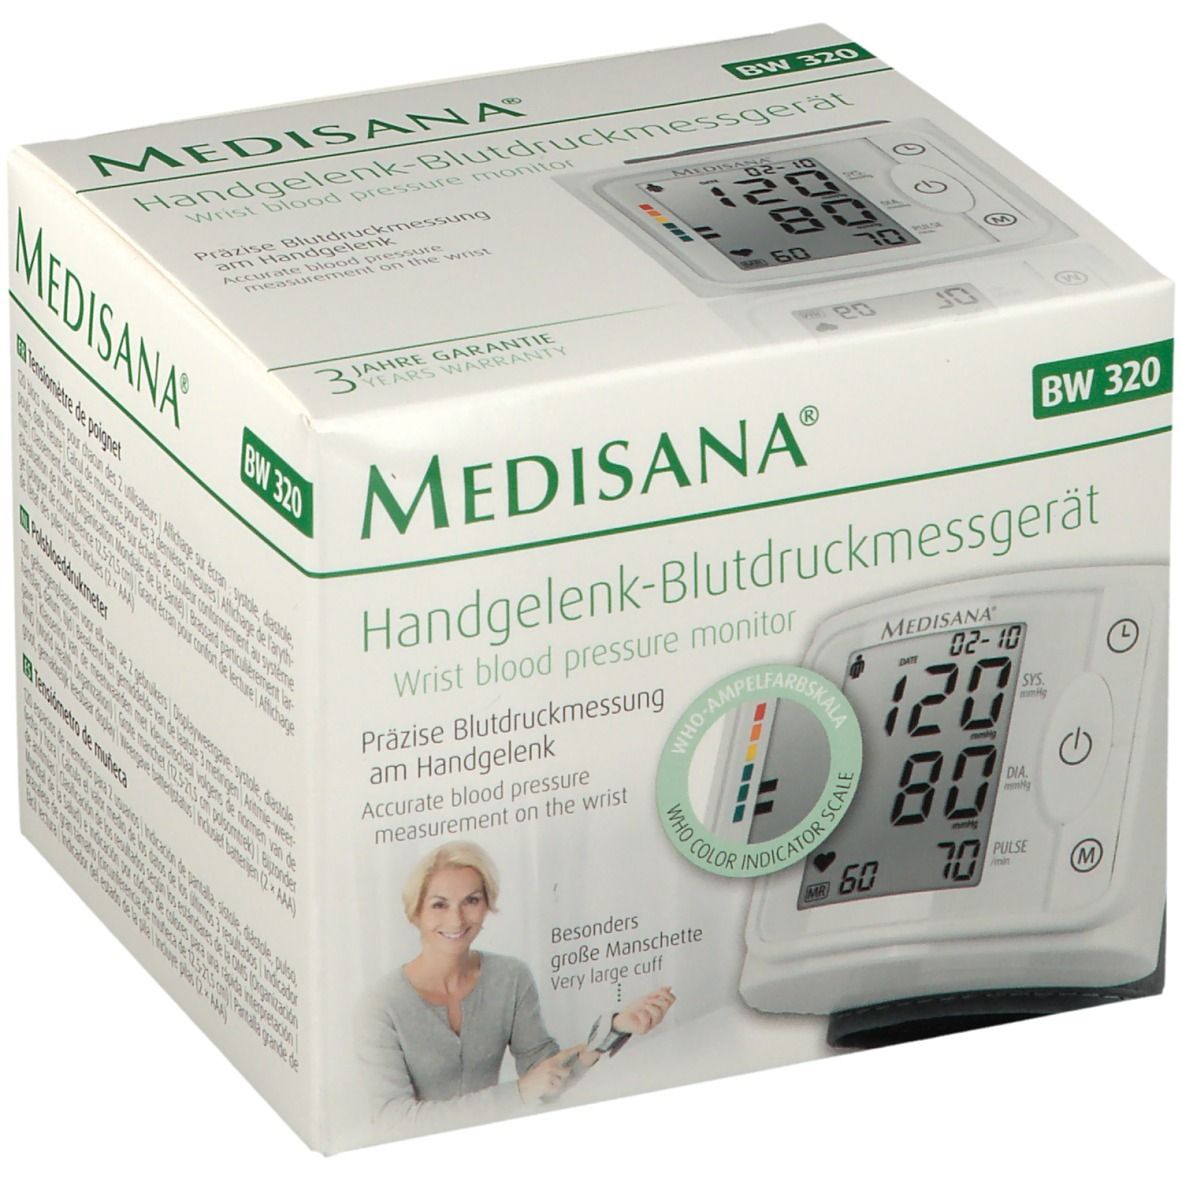 Medisana Handgelenk-Blutdruckmessgerät BW 320 1 - Apotheke St Redcare